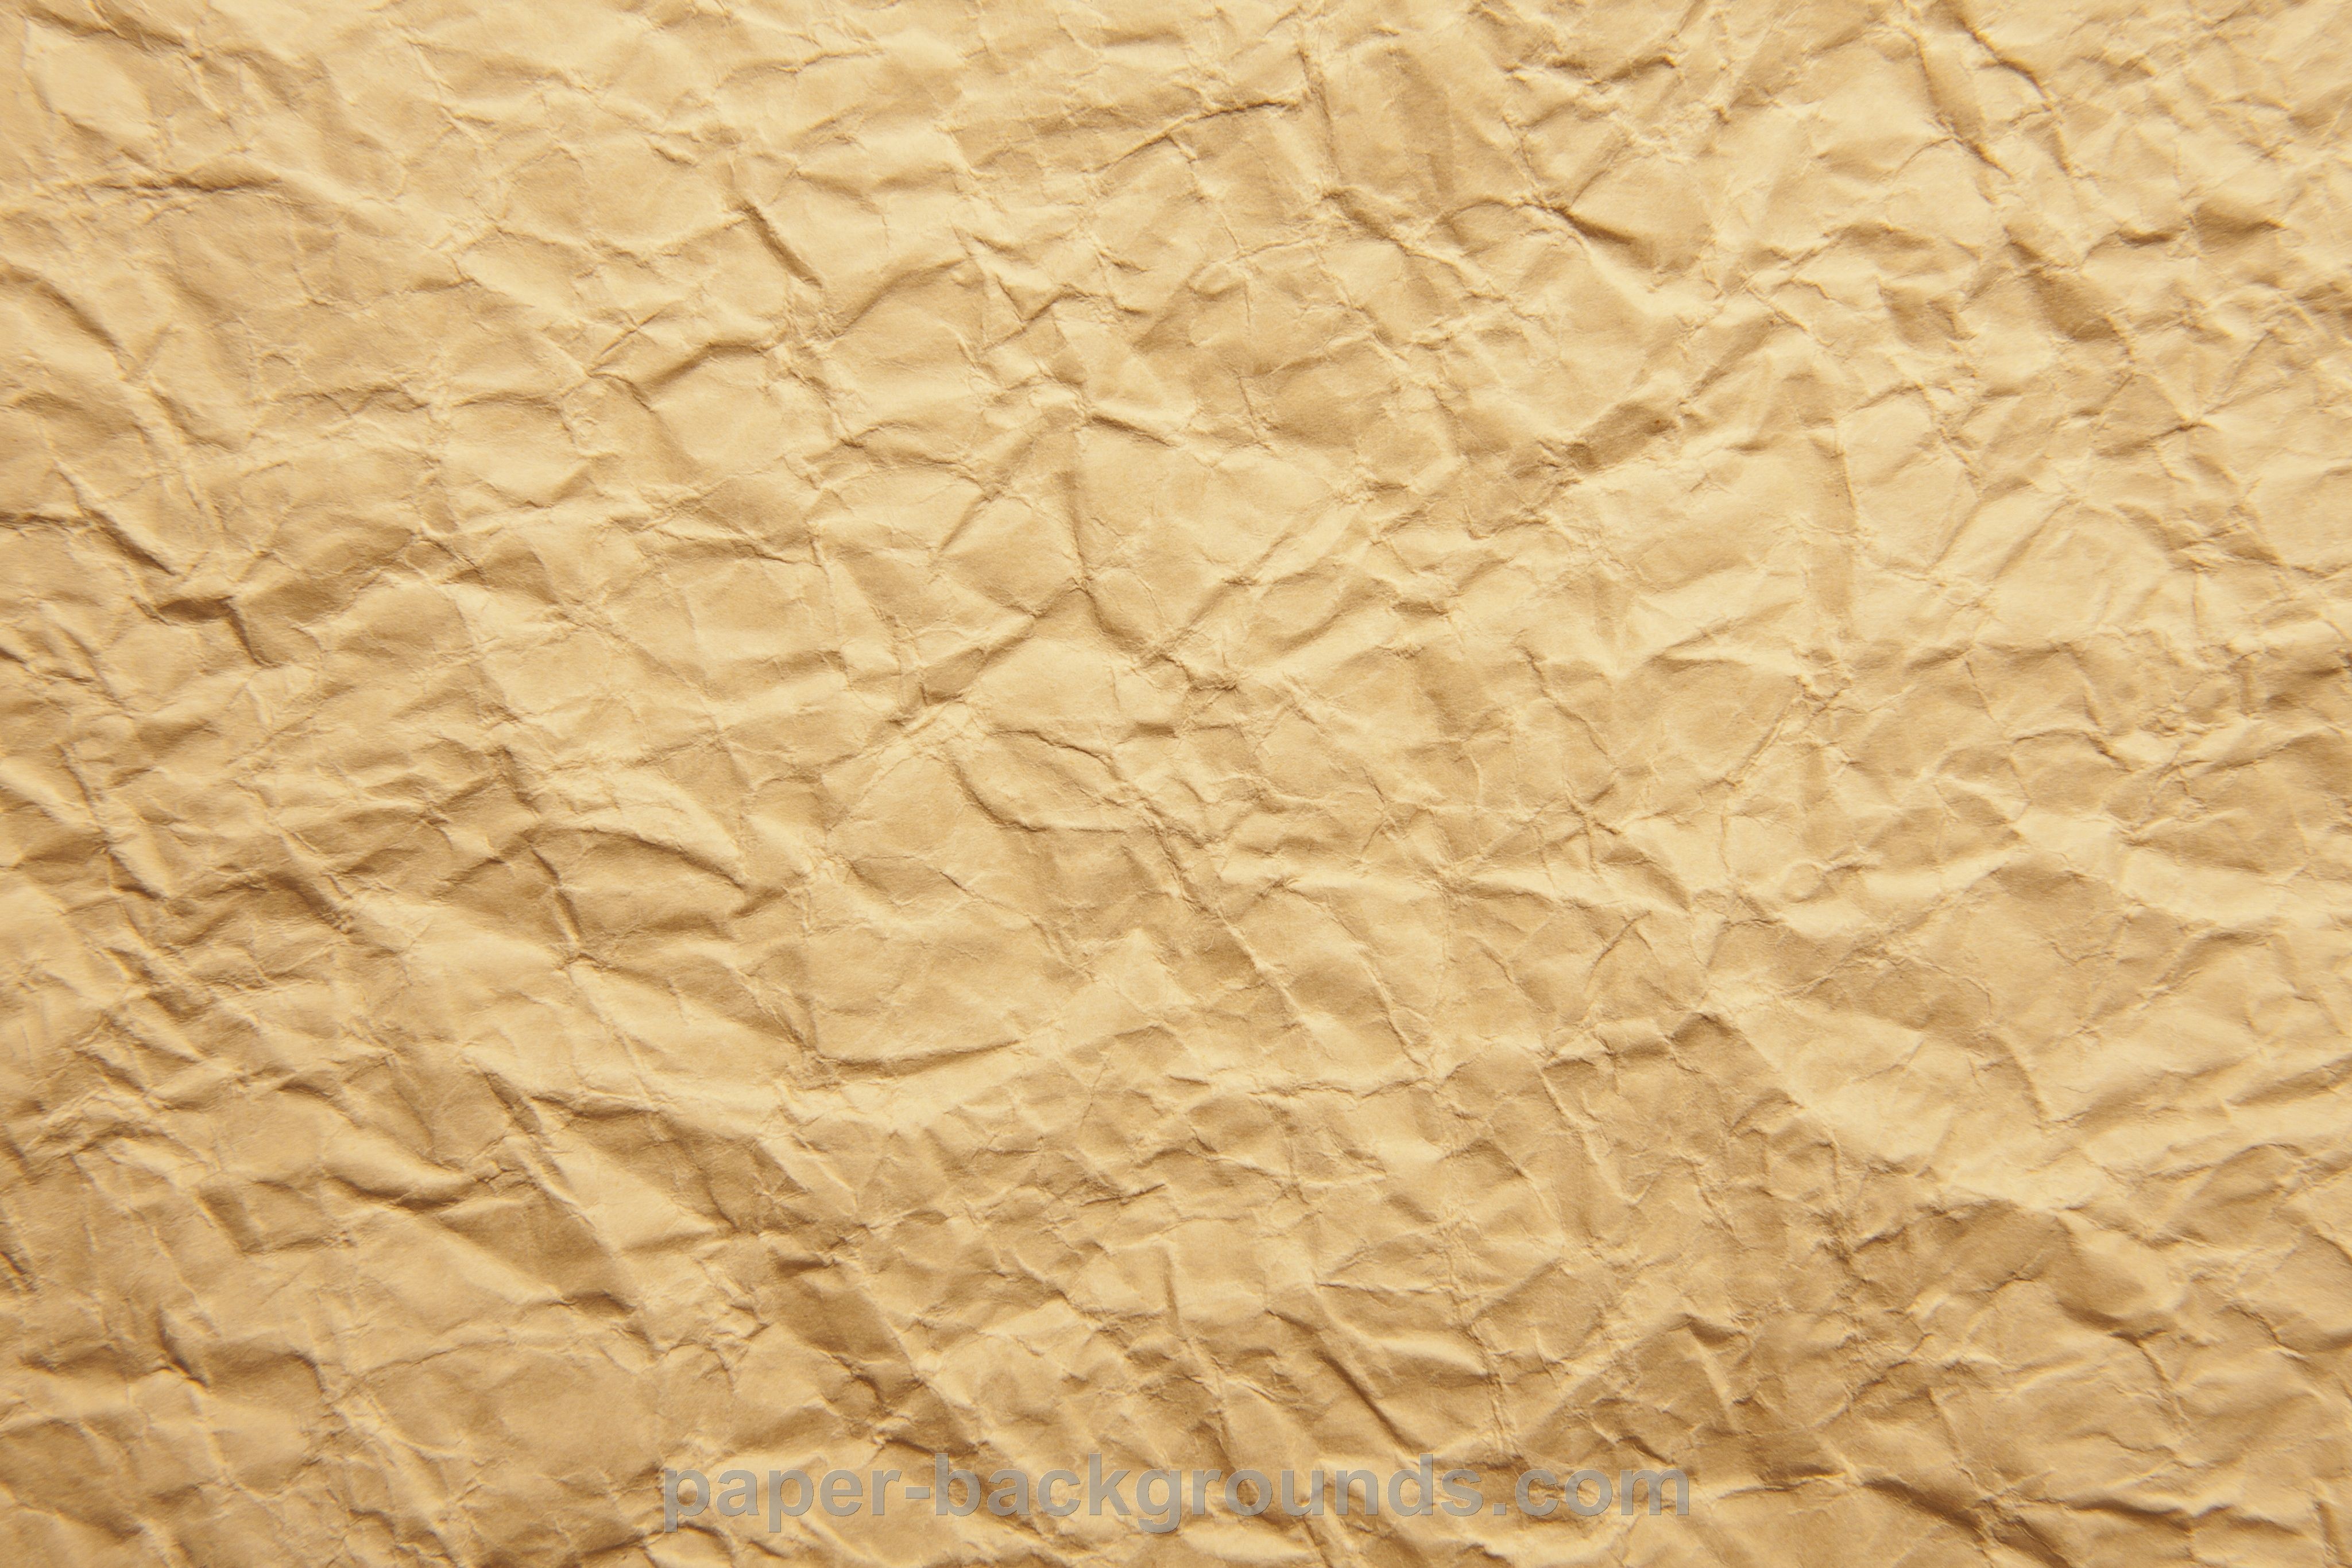 Crumple Paper Texture. Brown paper textures, Paper texture, Crumpled paper textures